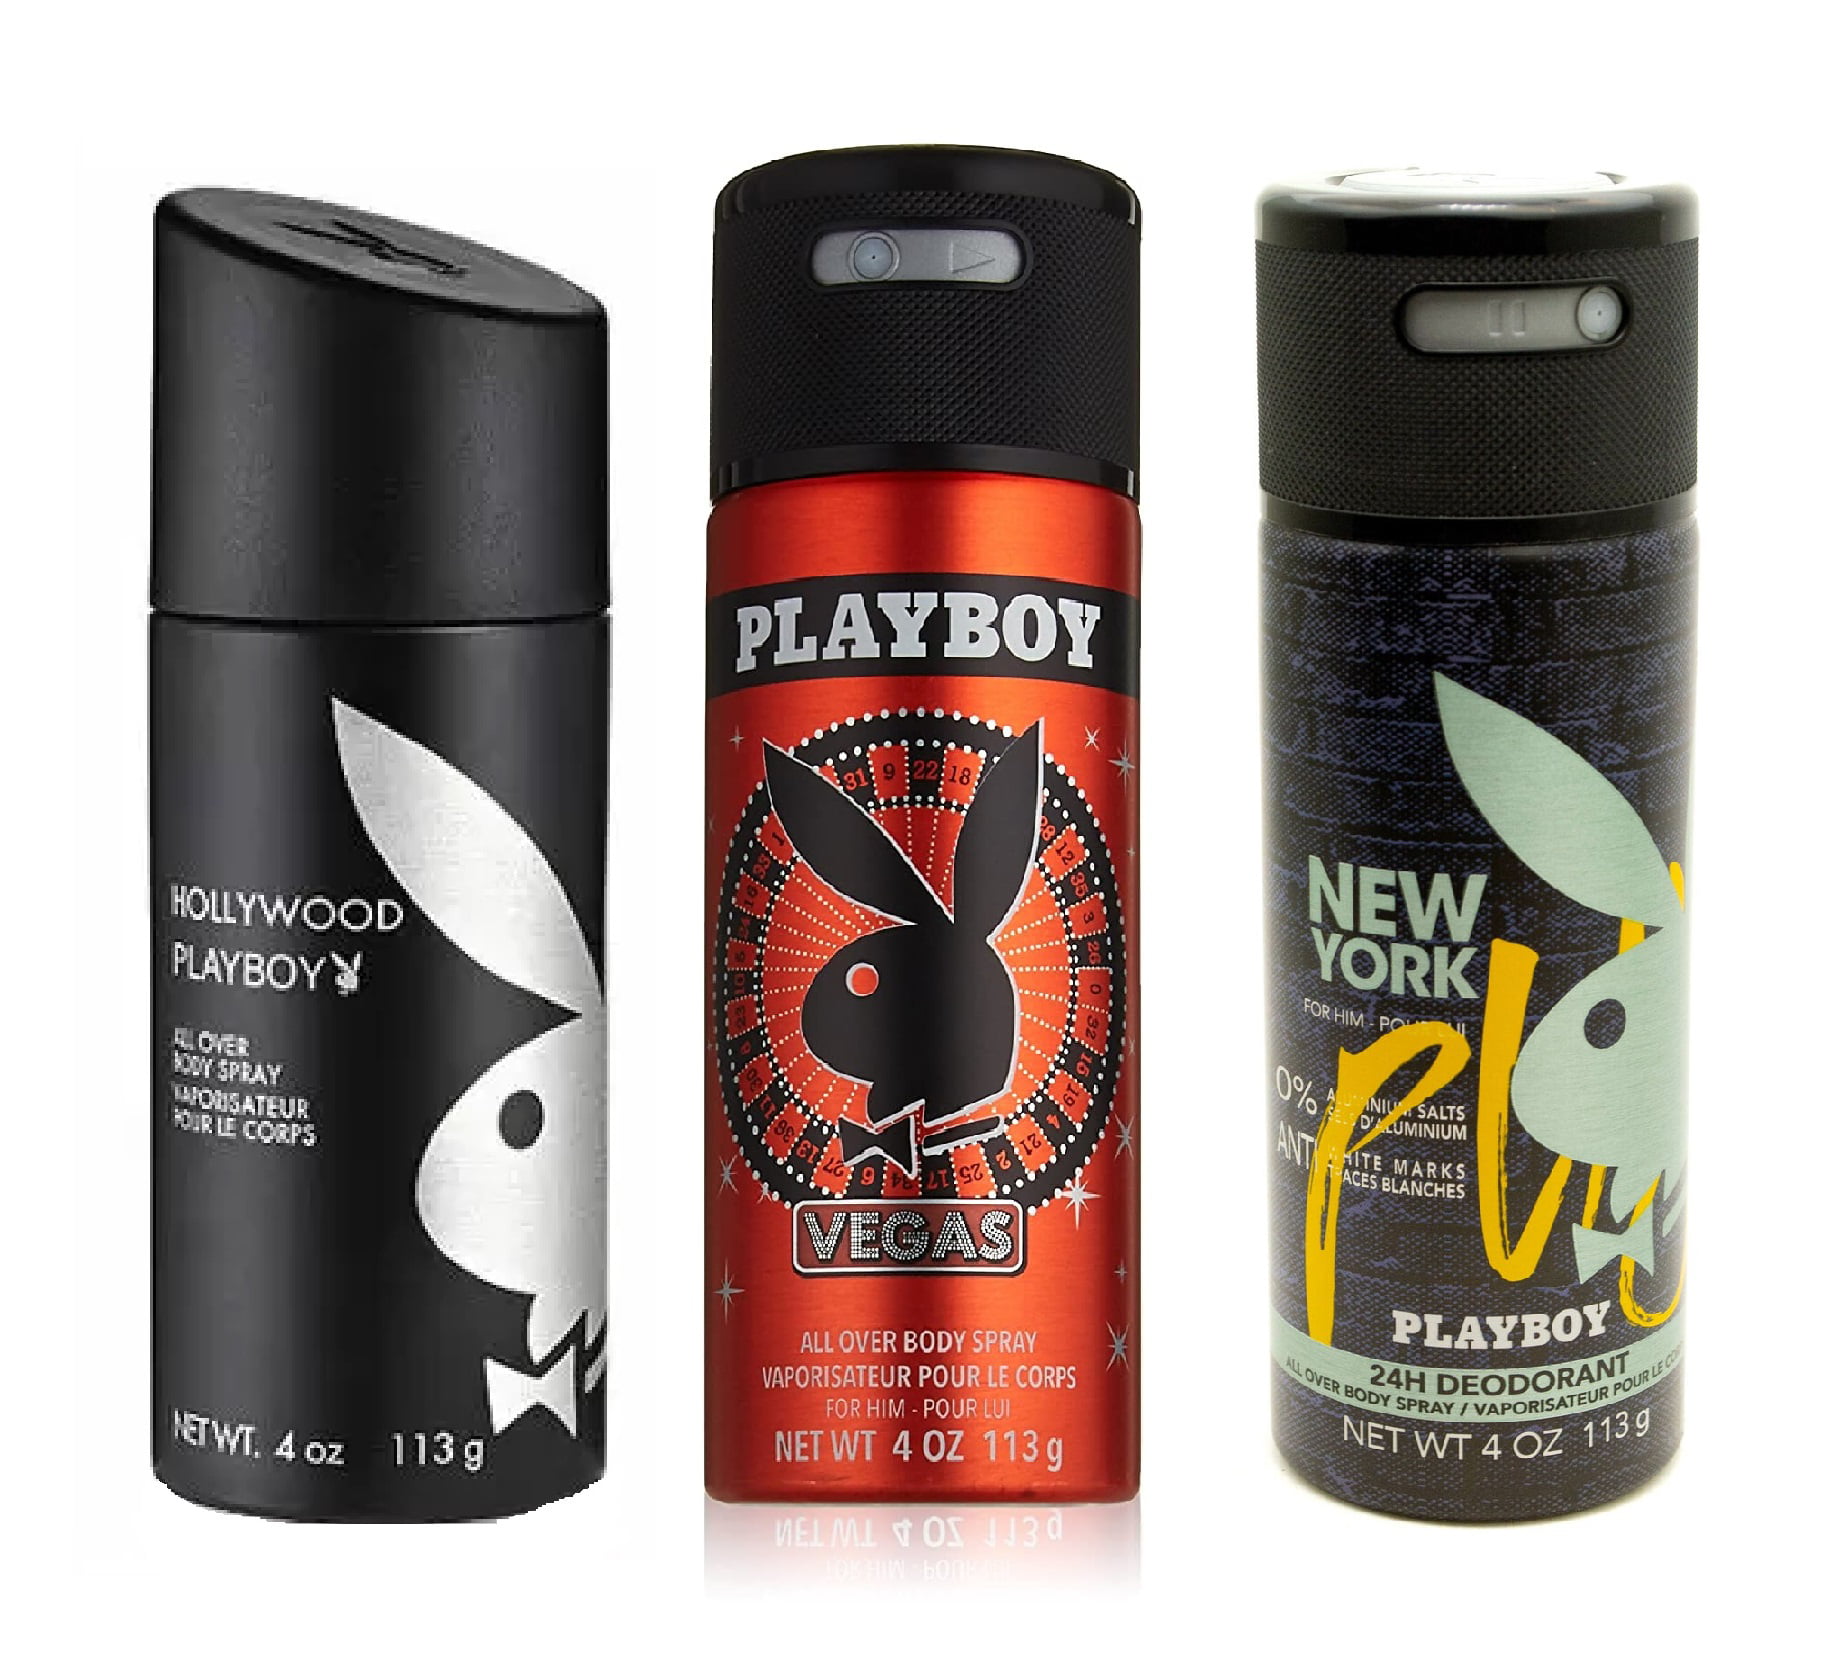 Playboy for Him 24hr Deodorant All Over Body Spray Trio, Vegas and New York, 4 oz each Walmart.com